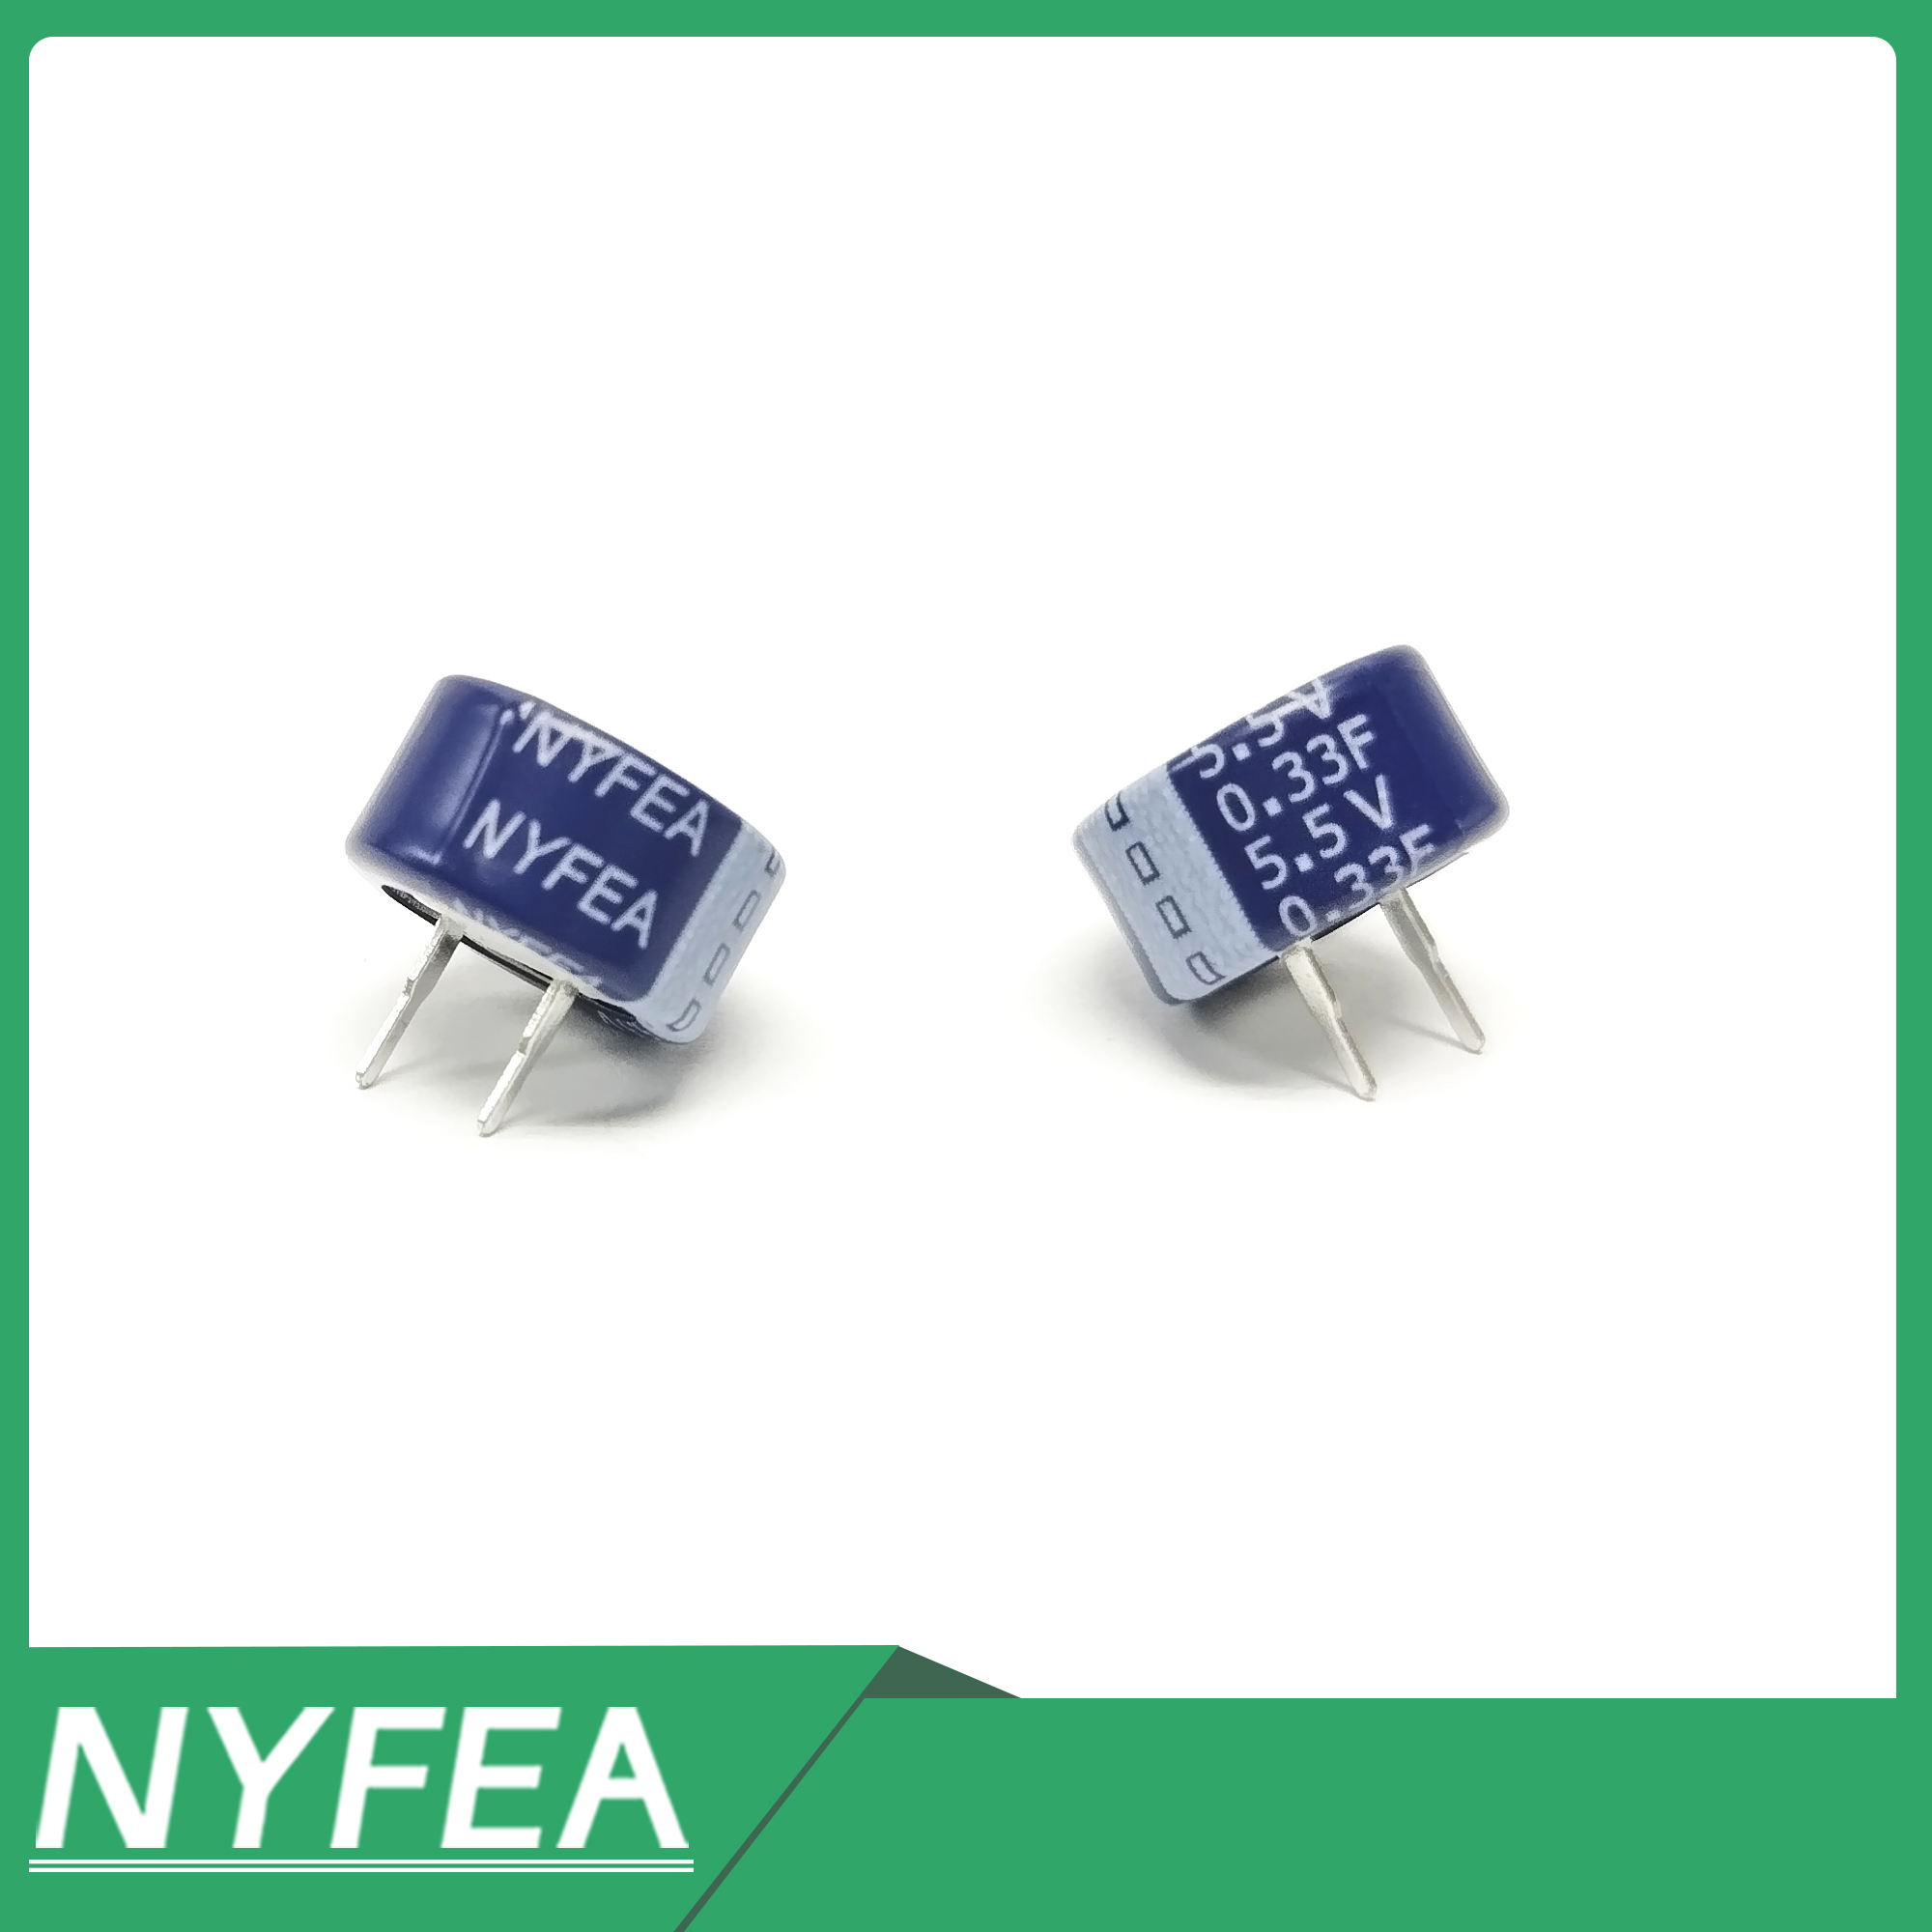 元器件应用中的法拉电容NYFEA推出2.7v，超小型纽扣式法拉电容